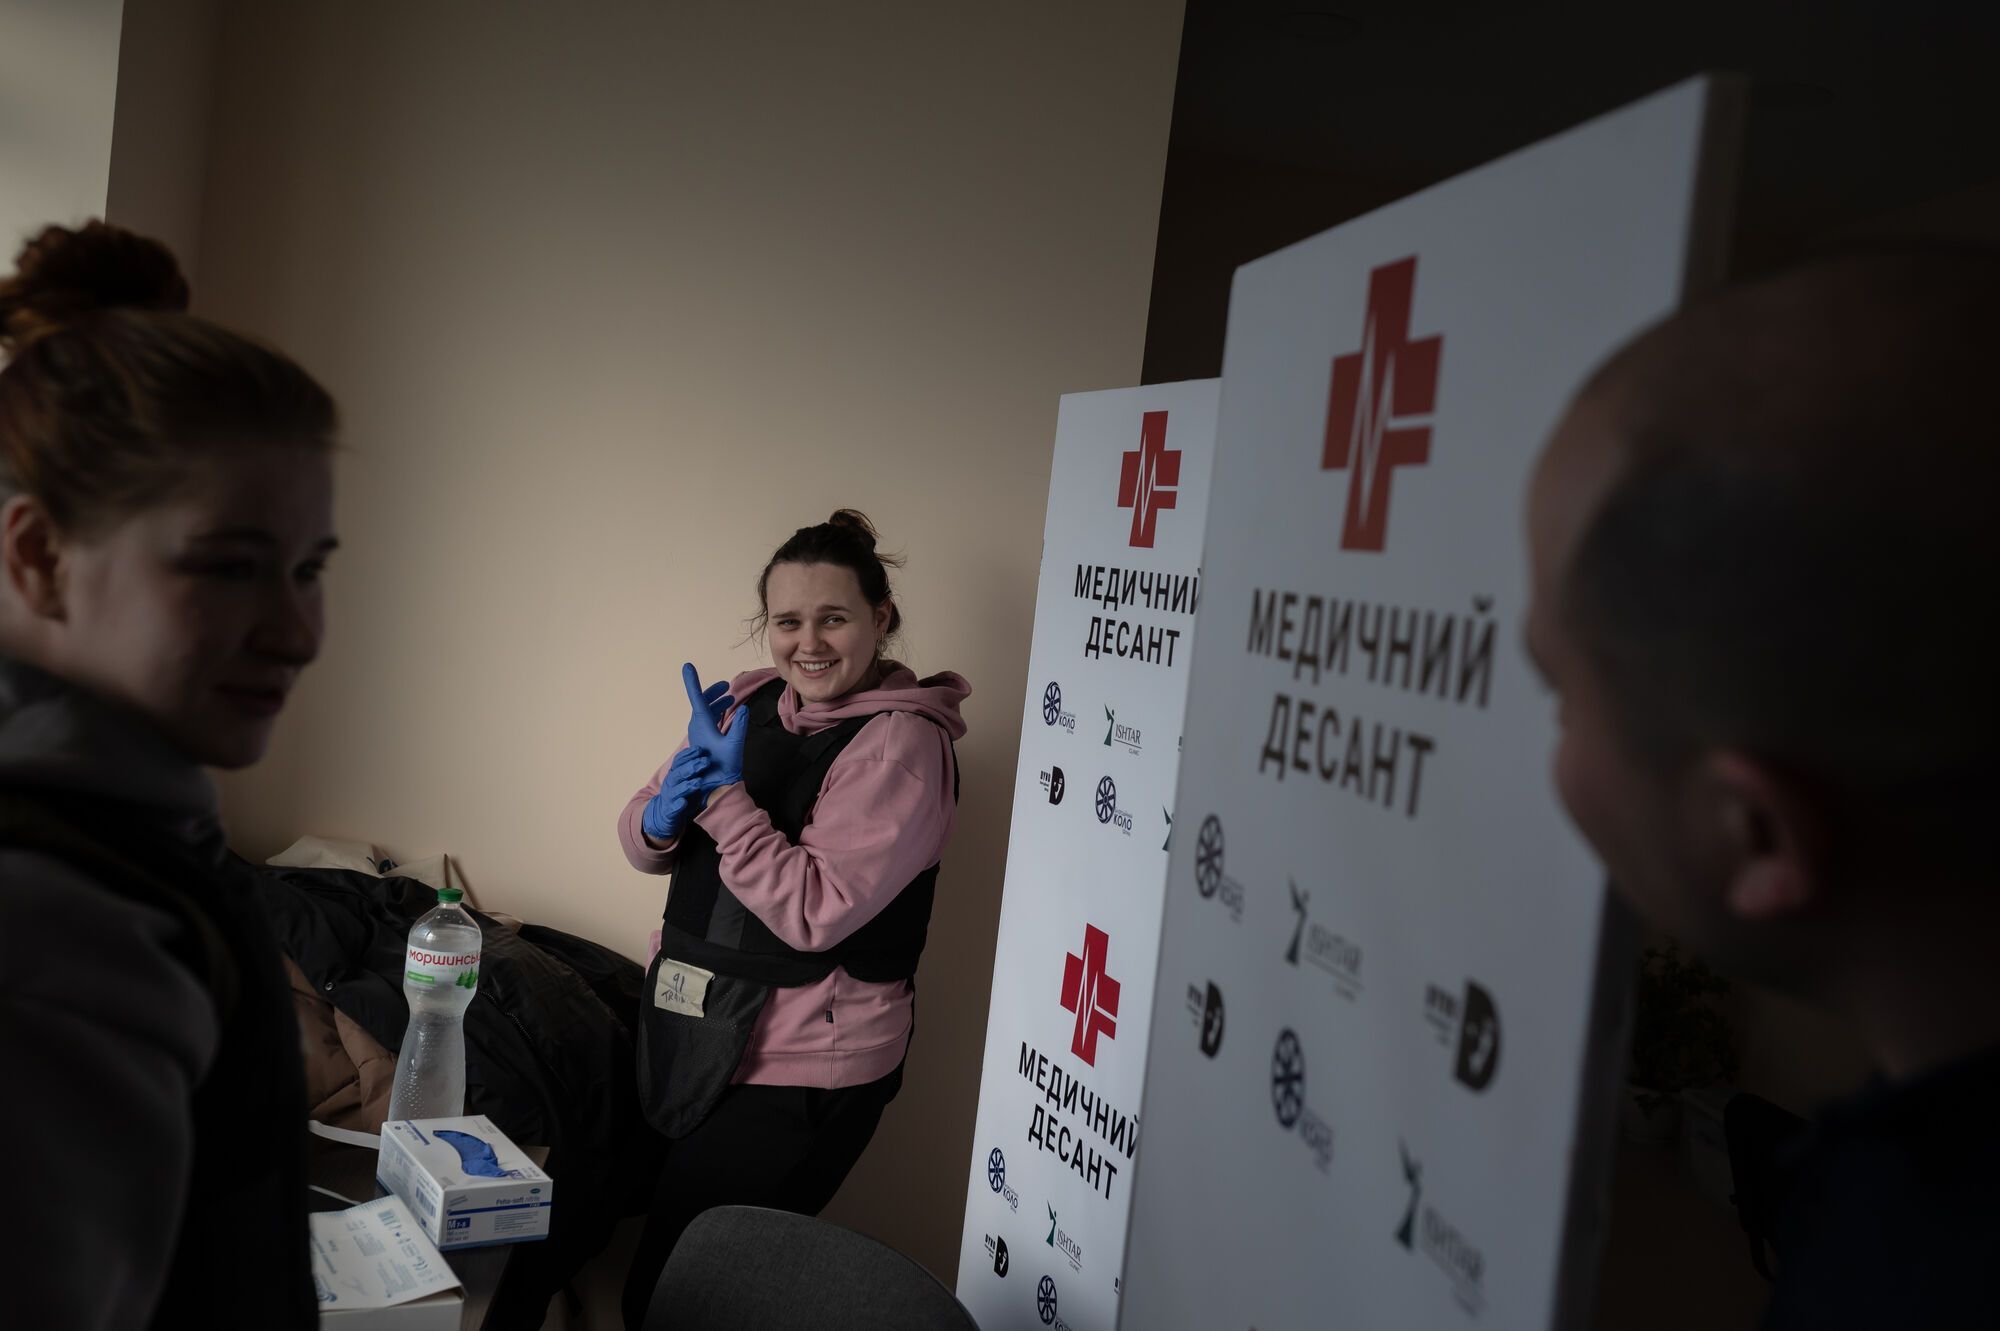 Медицинская помощь и спецтехника для саперов: компания OLX предоставила $10 млн на поддержку гуманитарных проектов в Украине